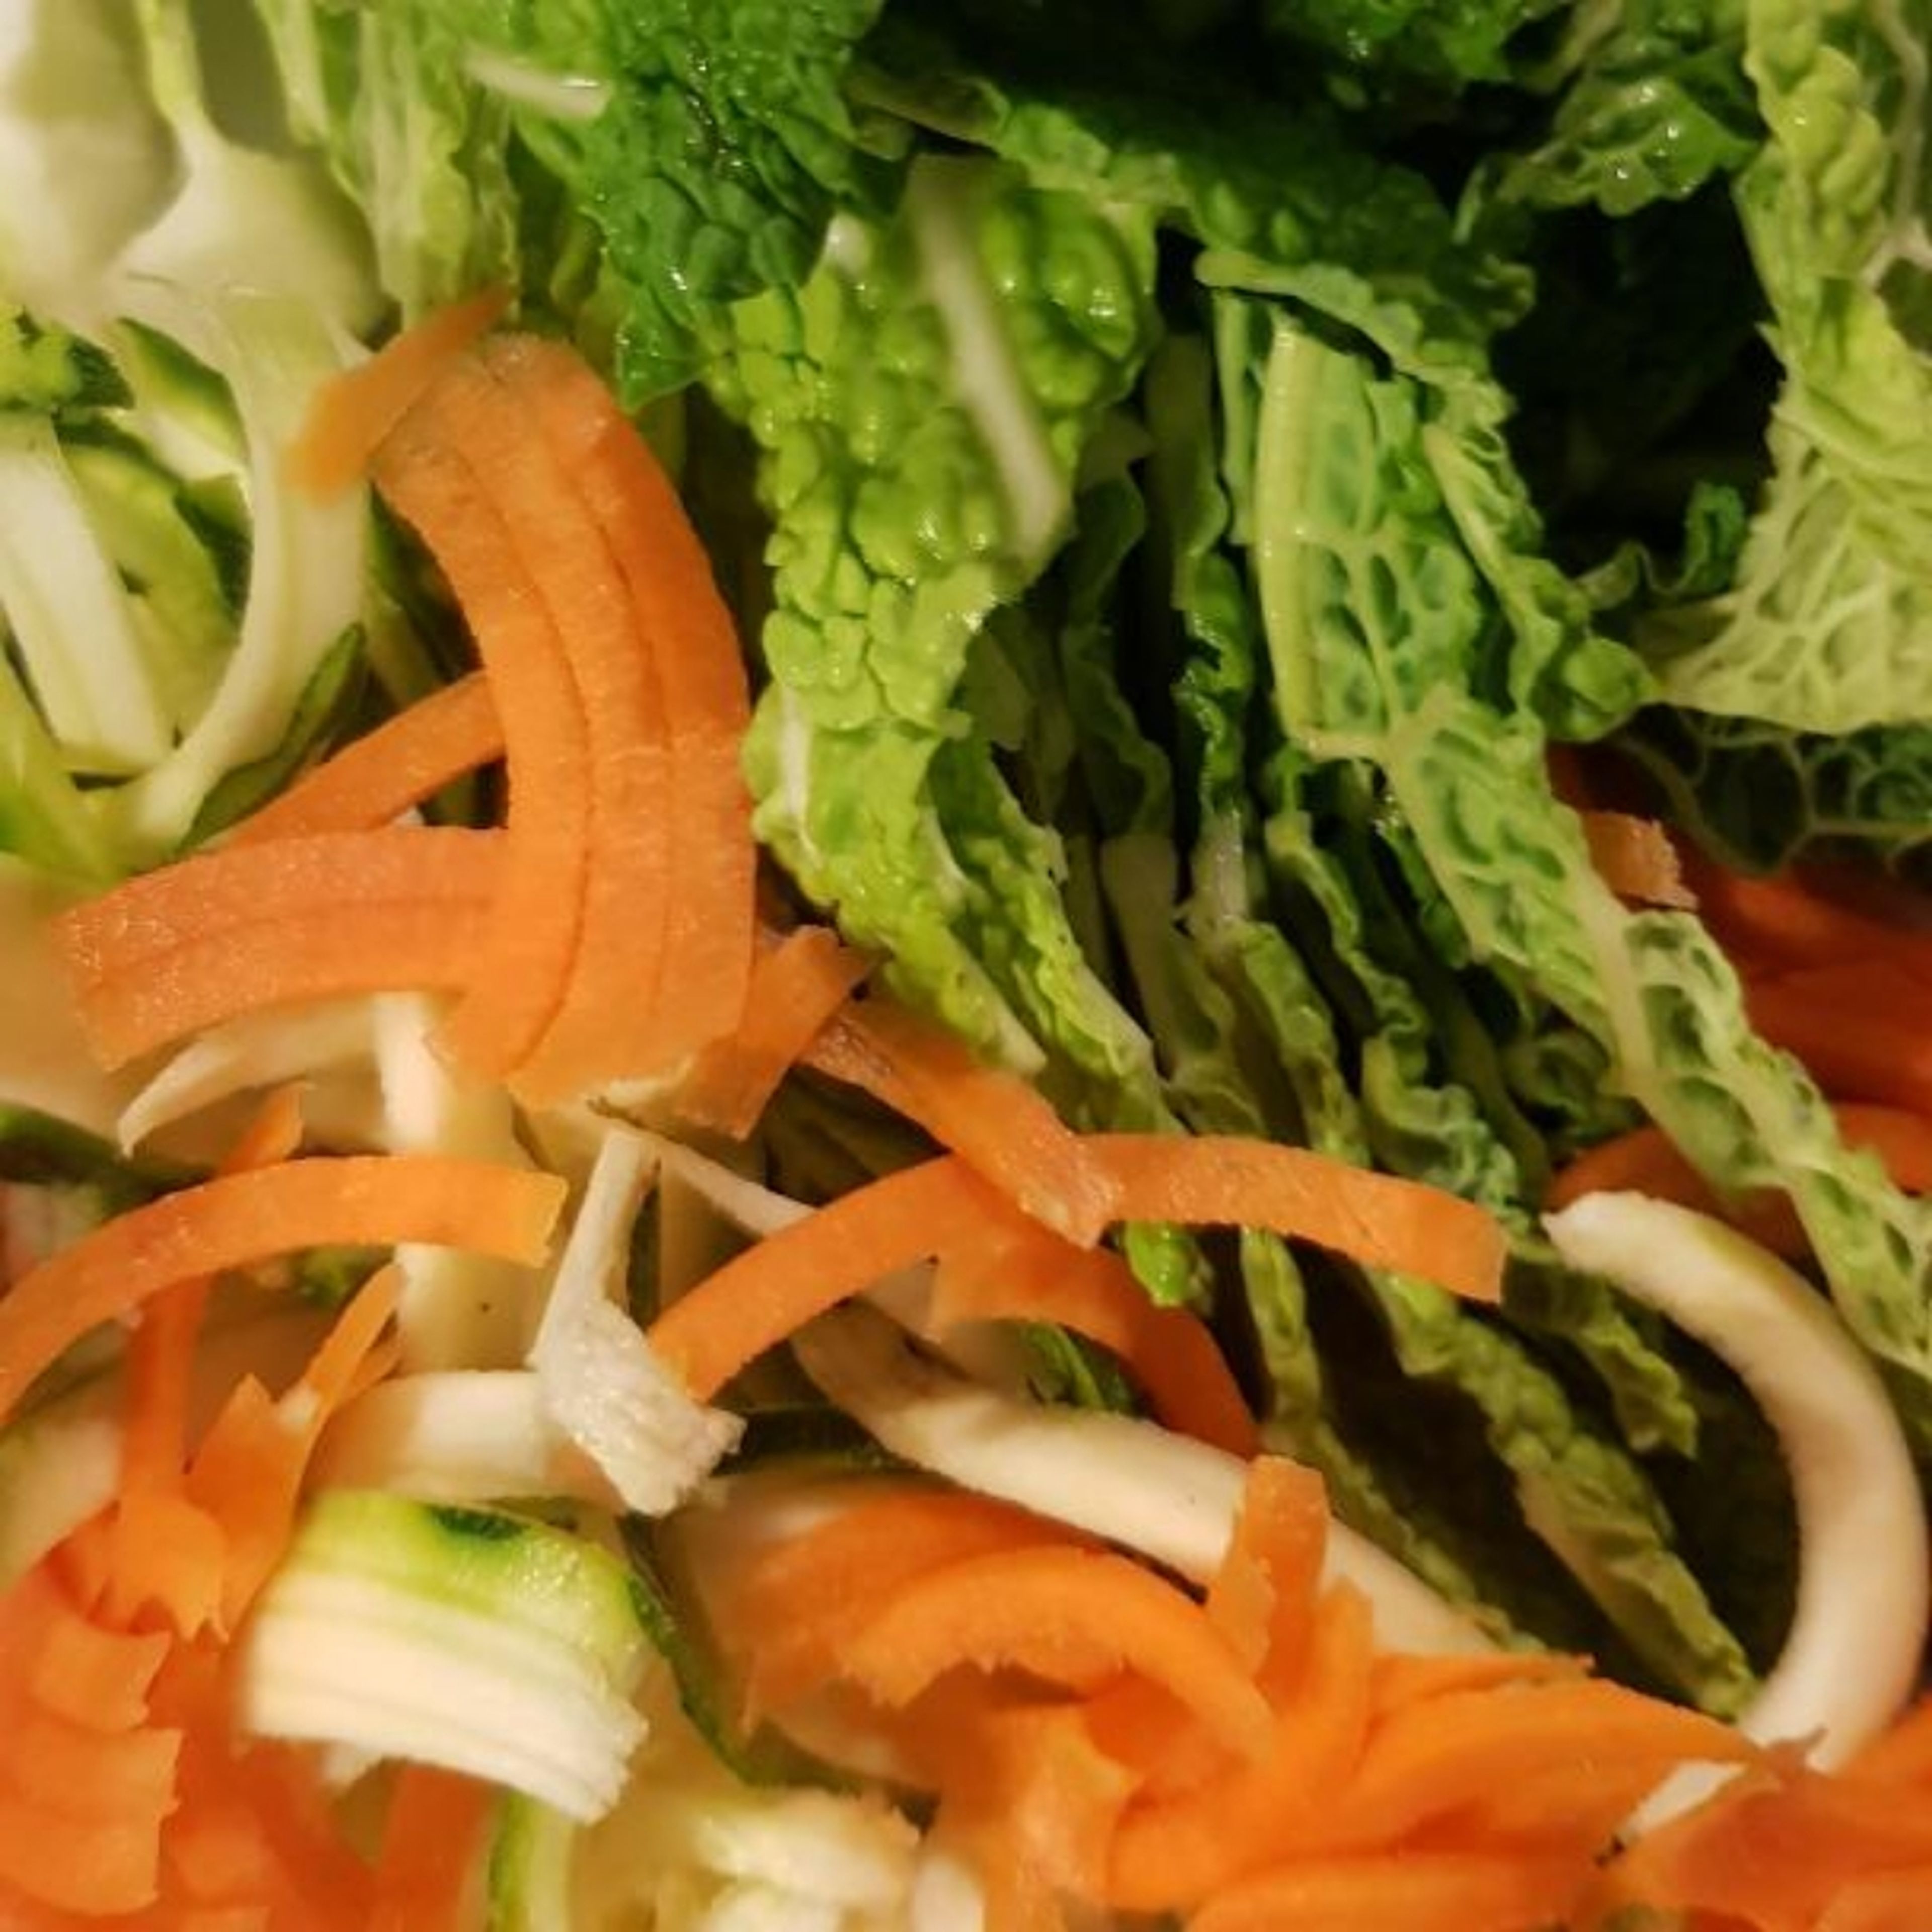 Das Gemüse zuschneiden und für einige Minuten in kochende Brühe geben. Karotten und Zucchini gerne mit Spiralschneider schneiden. Ihr könnt auch gerne anderes Gemüse nehmen - Super zur Reste Verwertung.